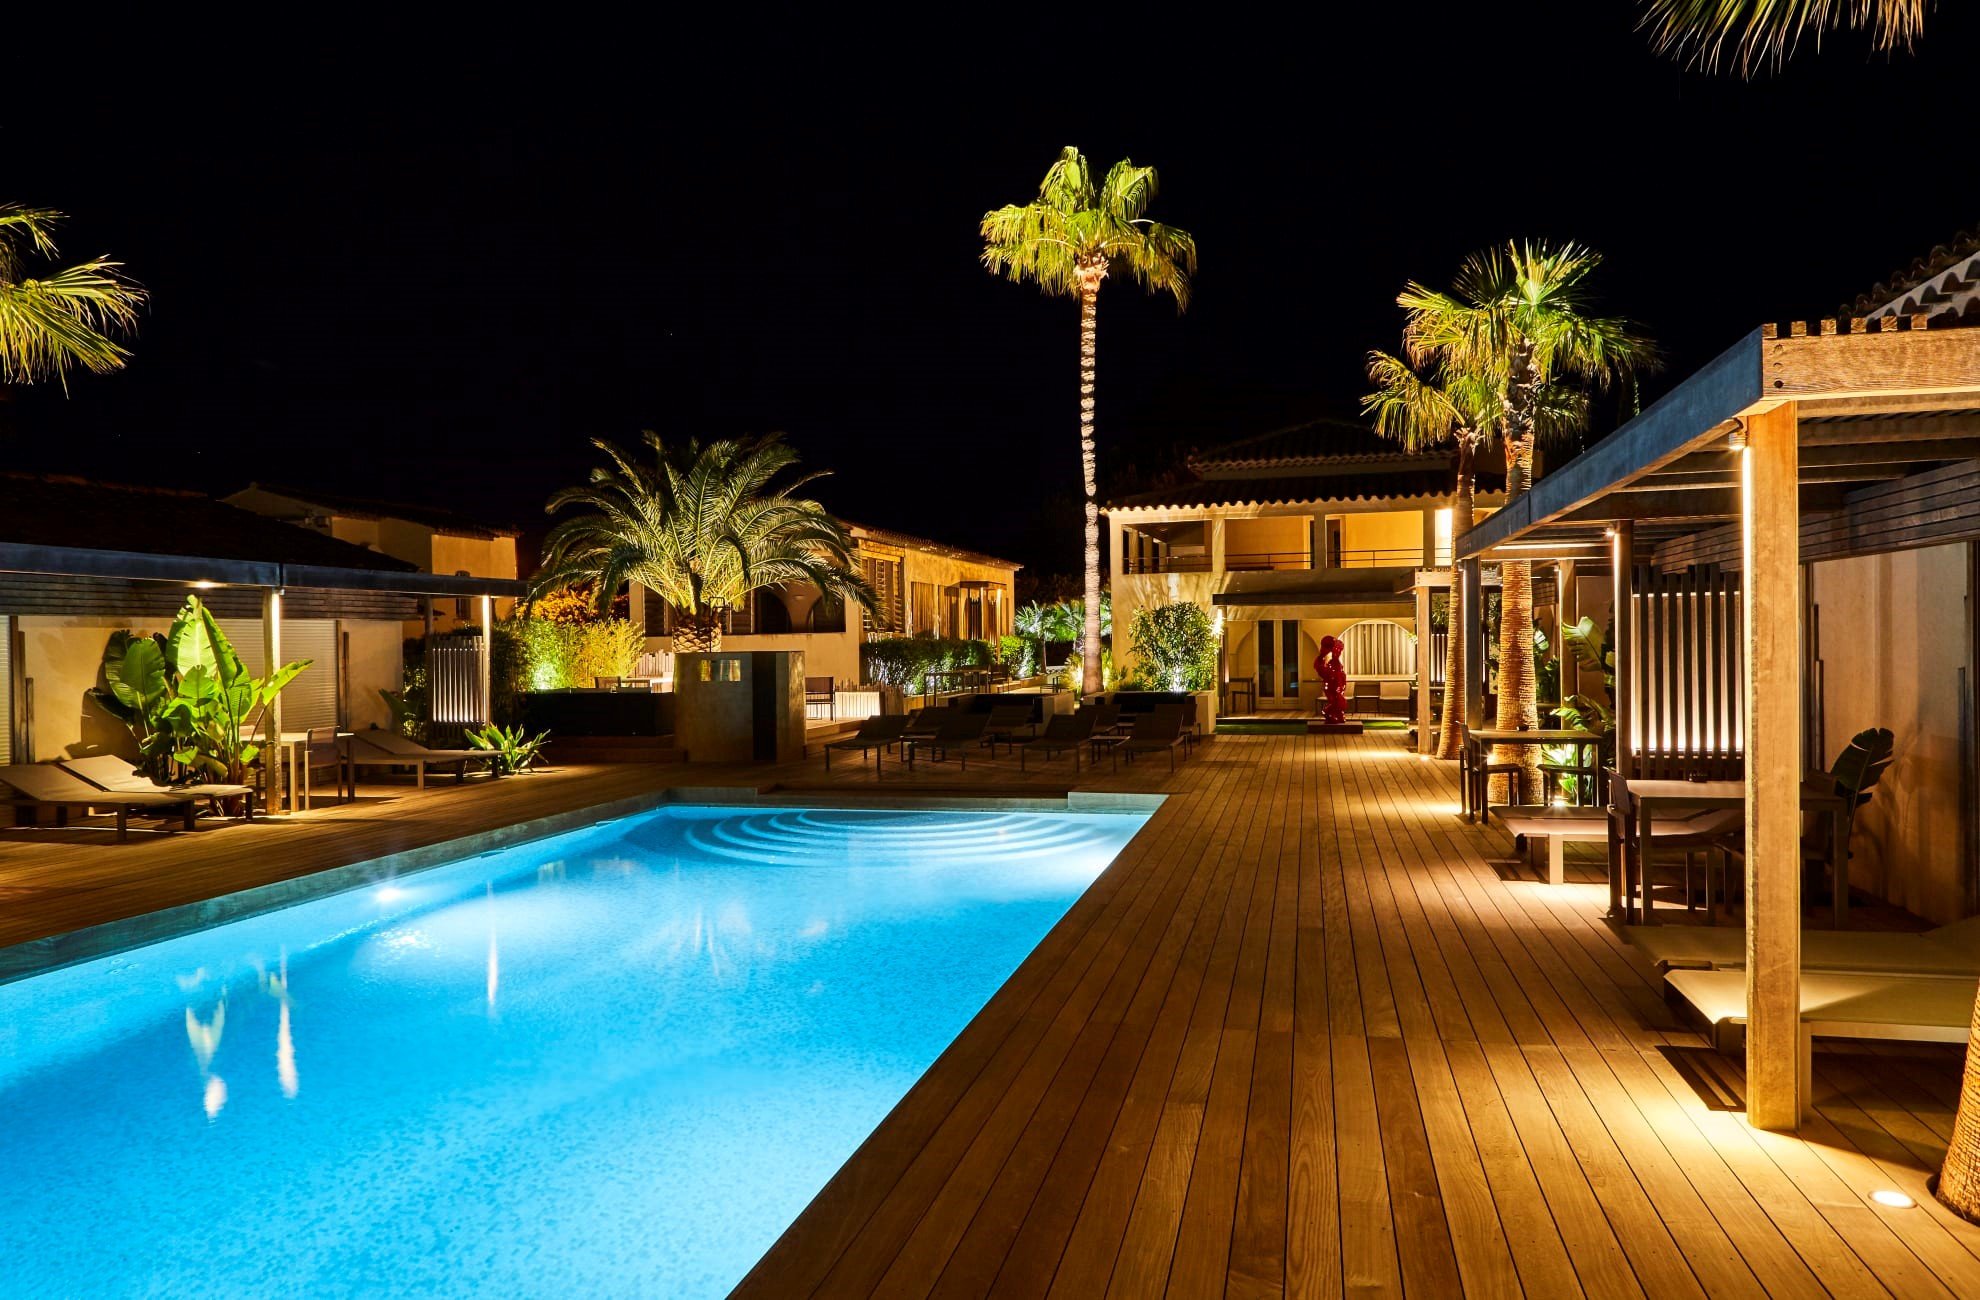 Novo hotel 5 estrelas de St. Tropez (imagem: Trivago/Divulgação)